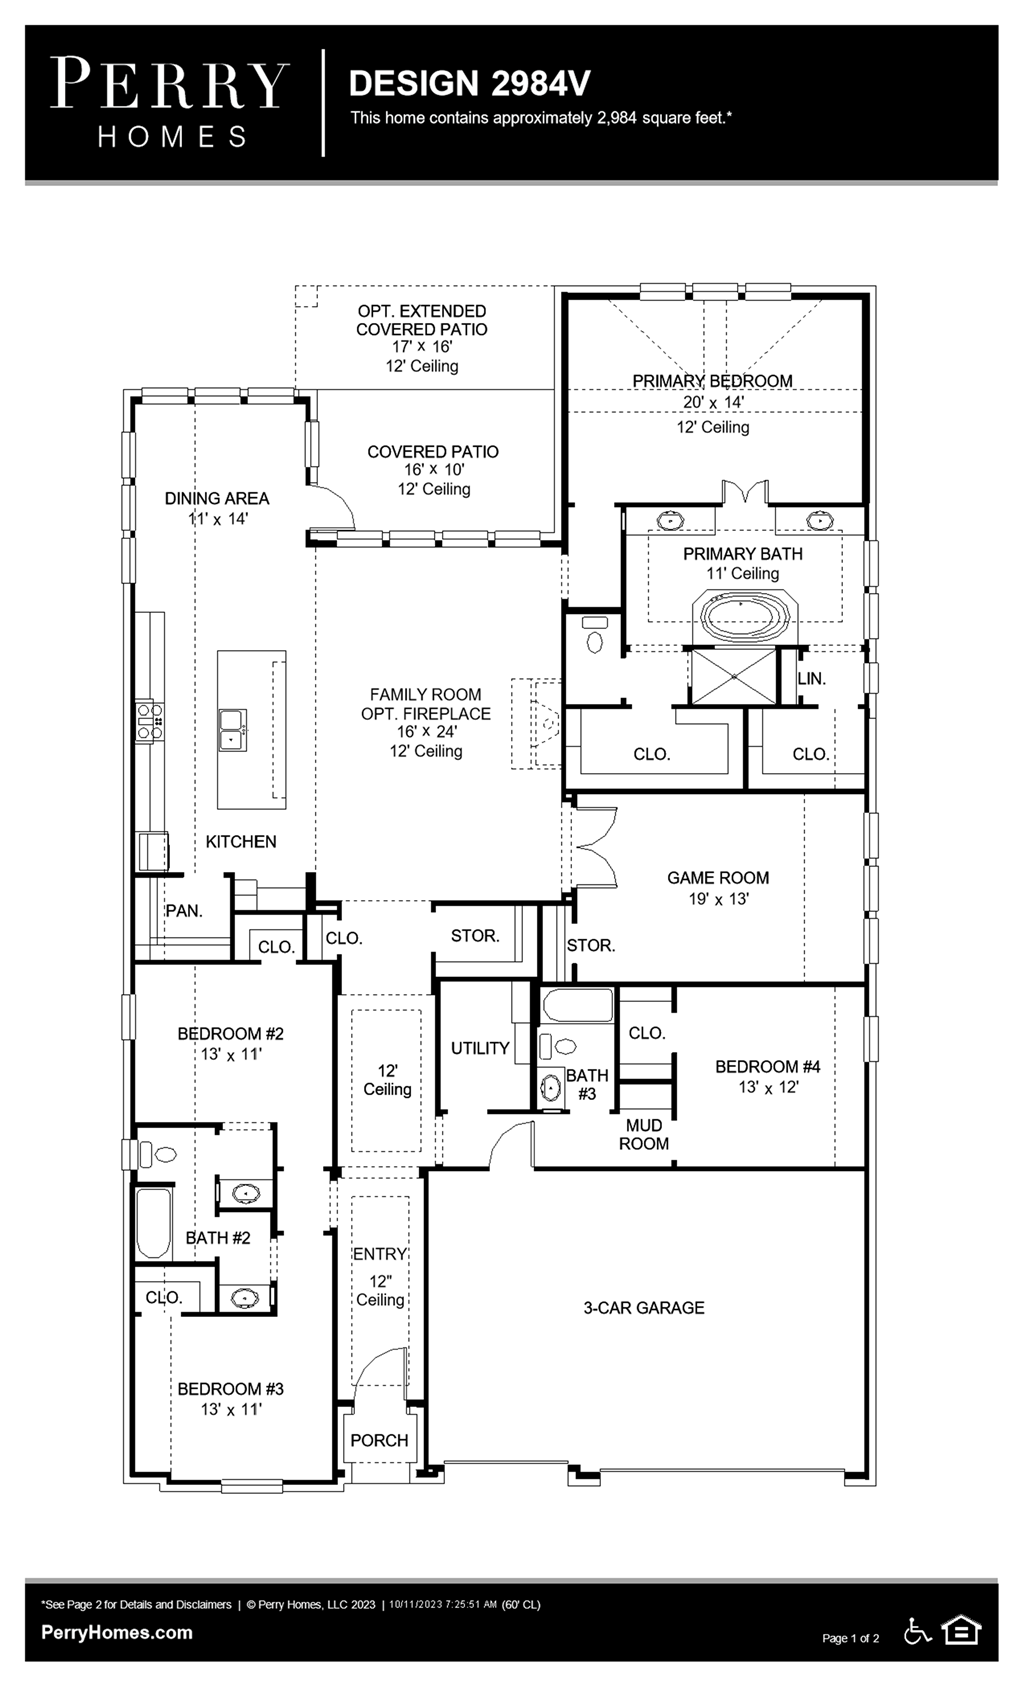 Floor Plan for 2984V